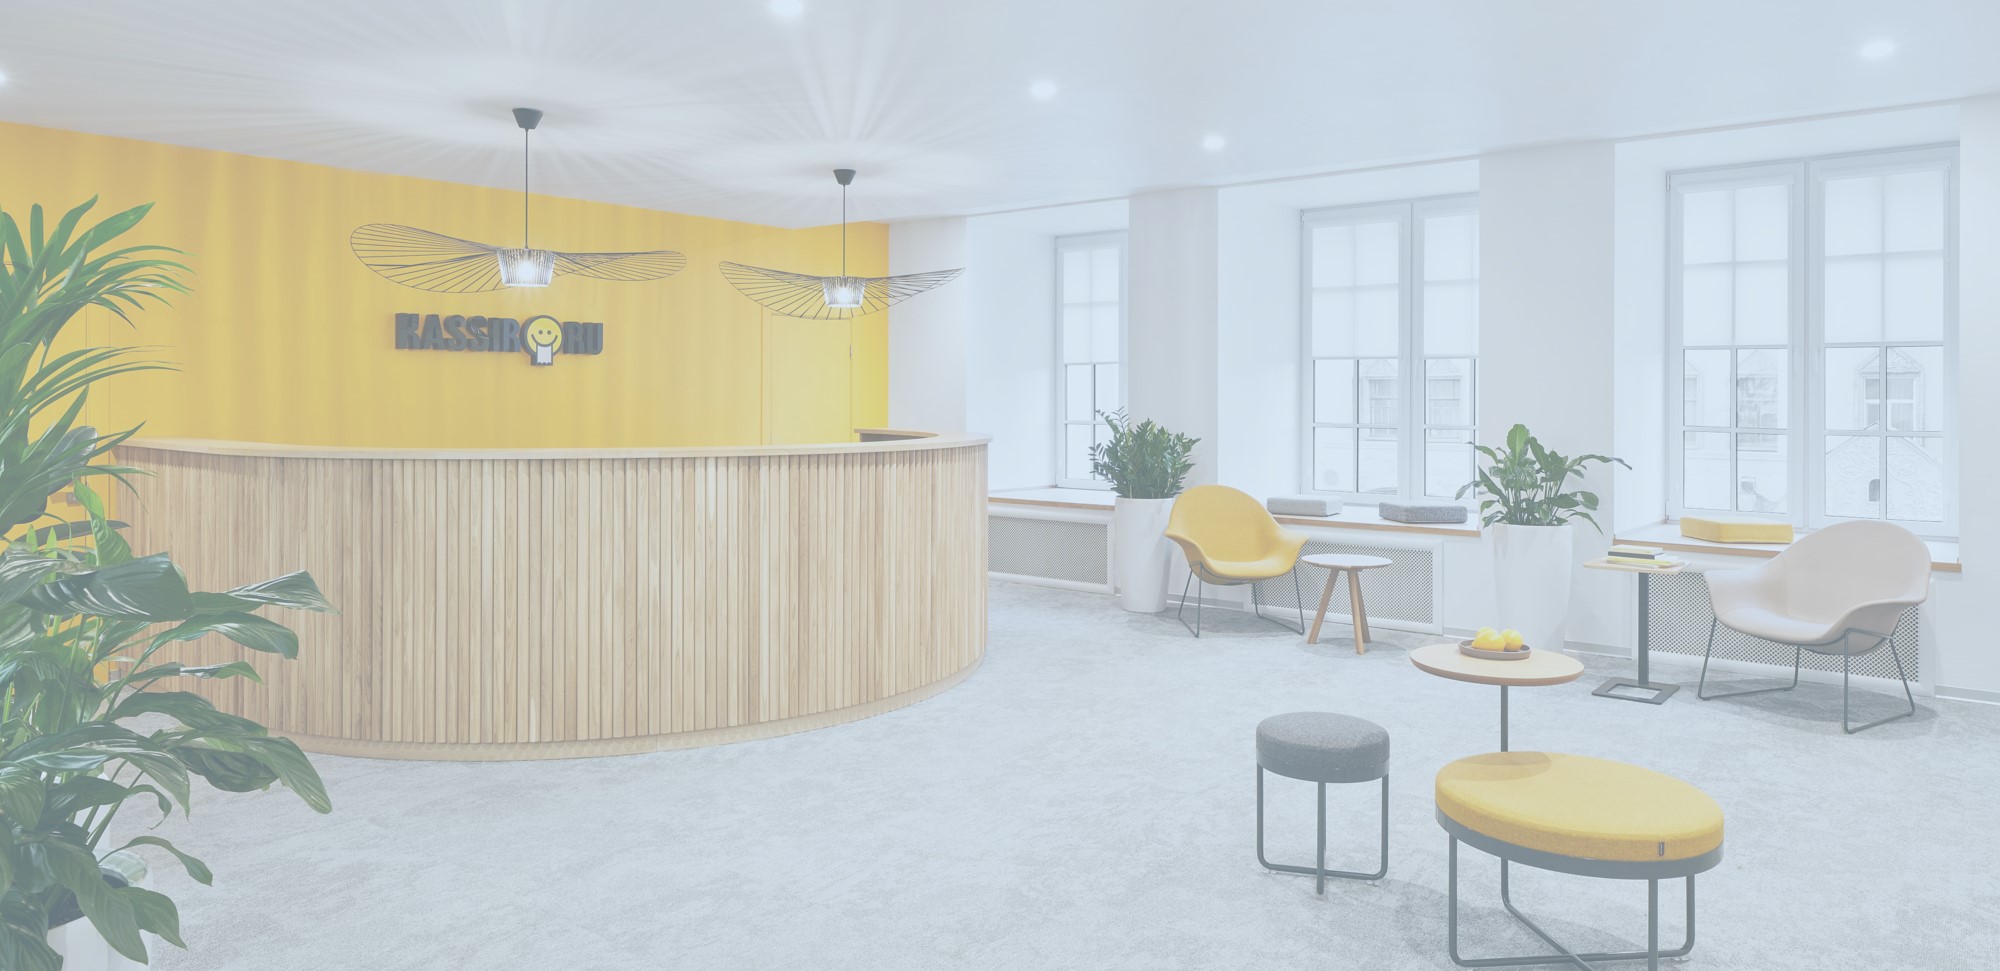 Kassir.ru — open space с улыбкой: как разработать дизайн интерьера офиса, который влюбит в себя с порога 